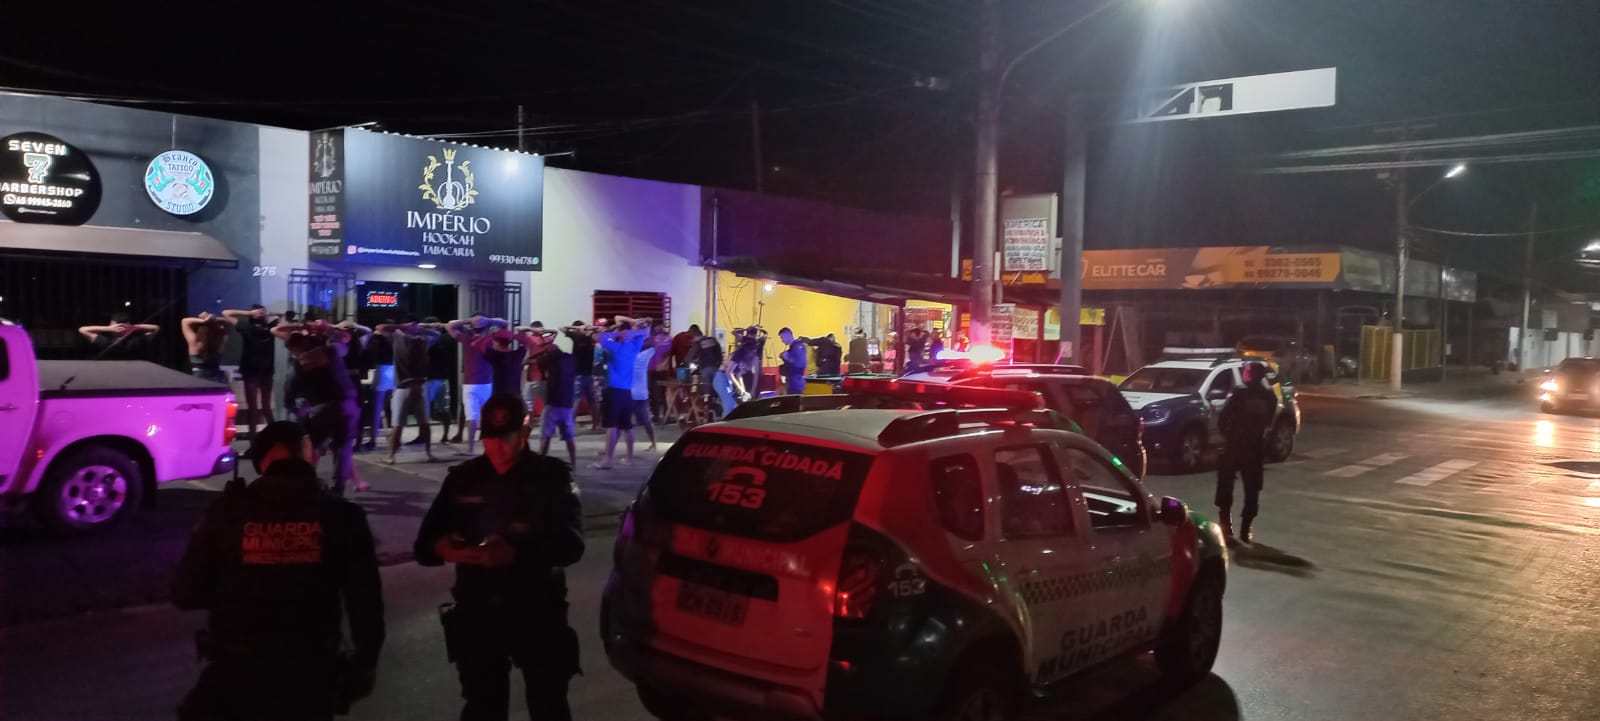 GM de VG fecha tabacaria e 11 menores são levados à Delegacia junto com bebida alcoólica, narguilé e arma de fogo.